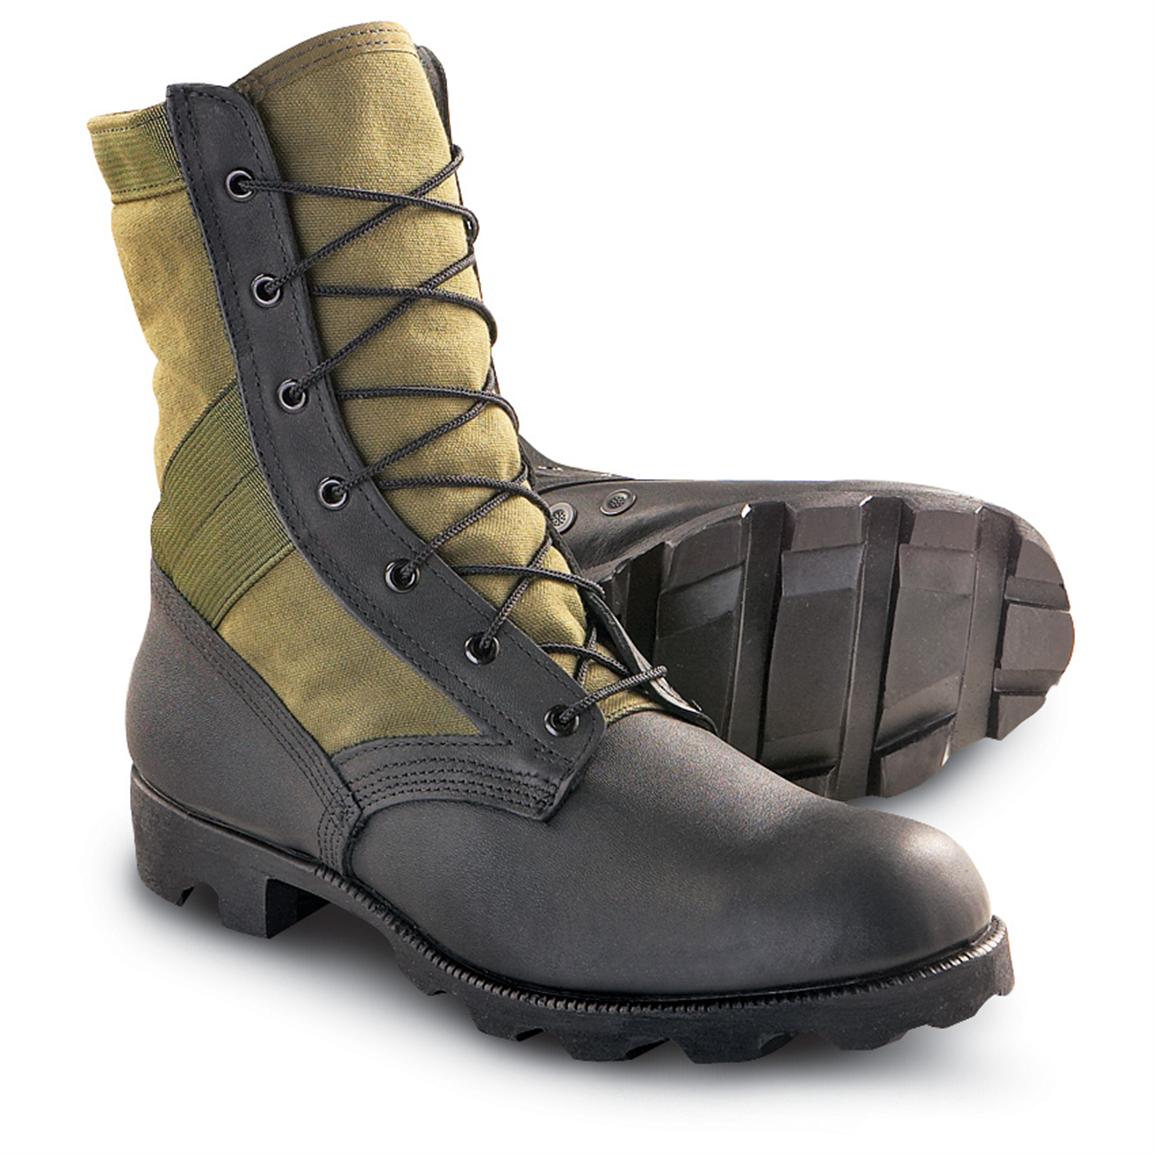 Men's Altama® Jungle Boots, Black / Olive - 107775, Combat & Tactical ...